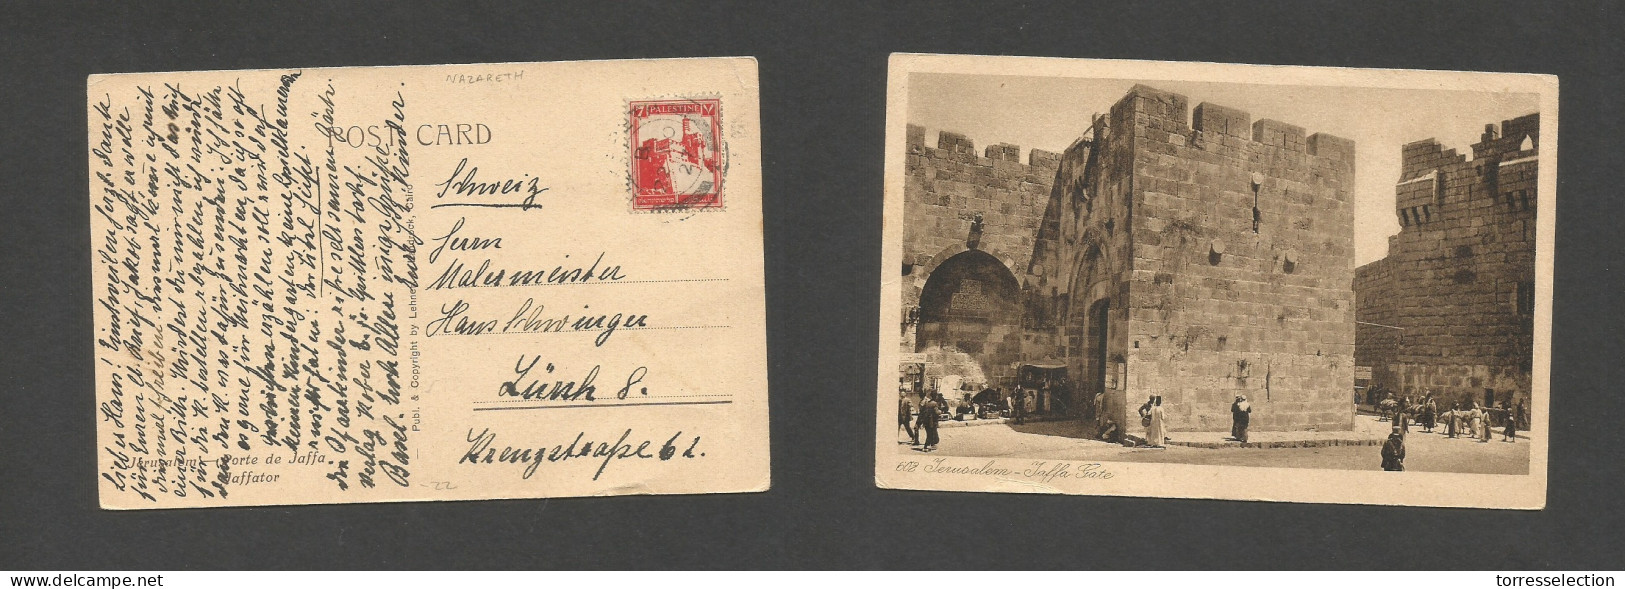 PALESTINE. 1927 (22 Nov) Nazareth - Switzerland, Zurich. Fkd Ppc. Fine. SALE. - Palestine